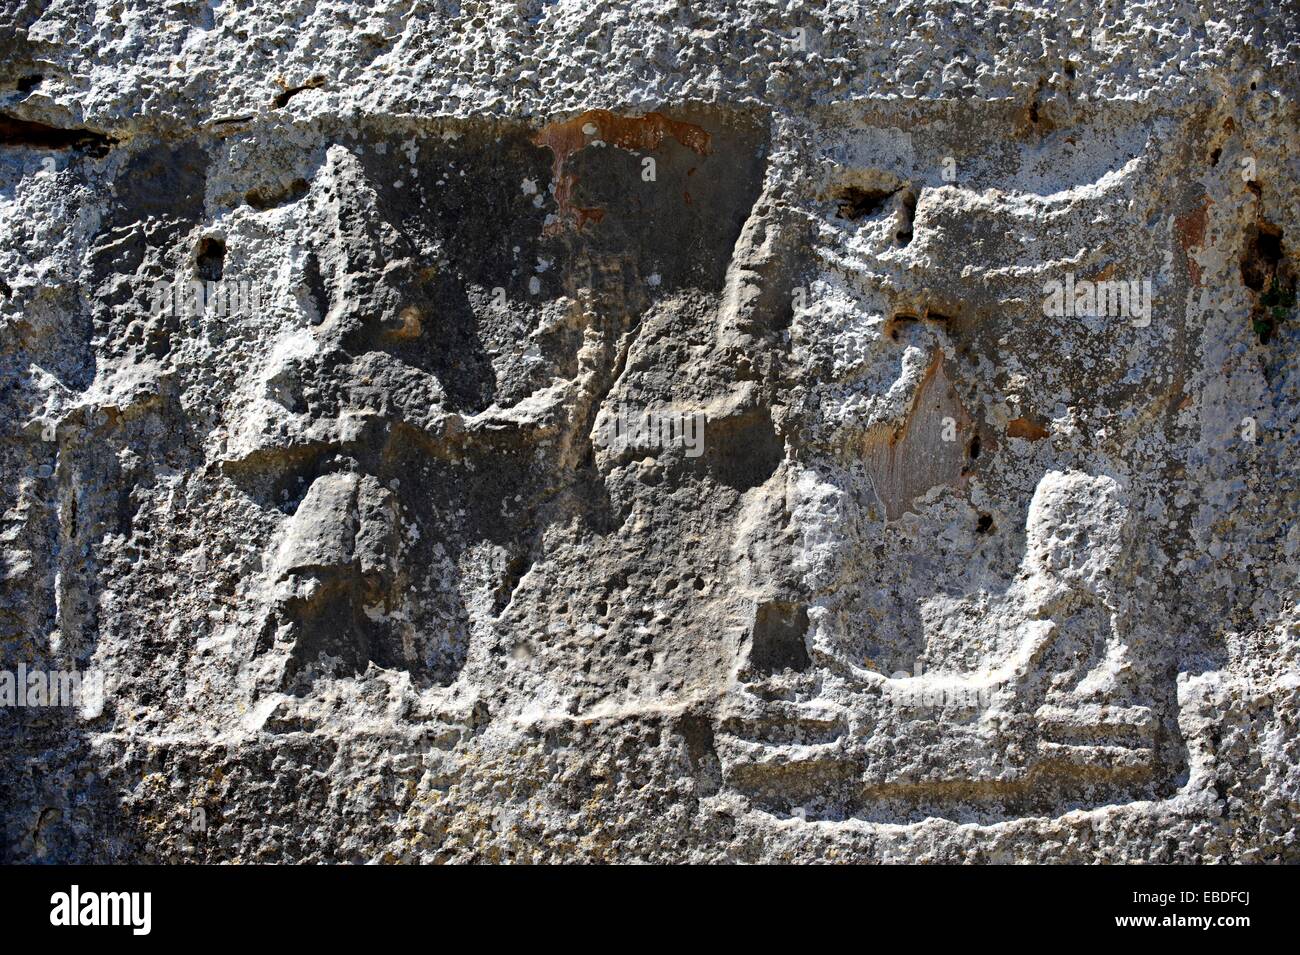 Foto di Yazilikaya e ho scritto riock Hattusa , il più grande conosciuto Hittita santuario del XIII secolo a.c. realizzata nel regno di Foto Stock